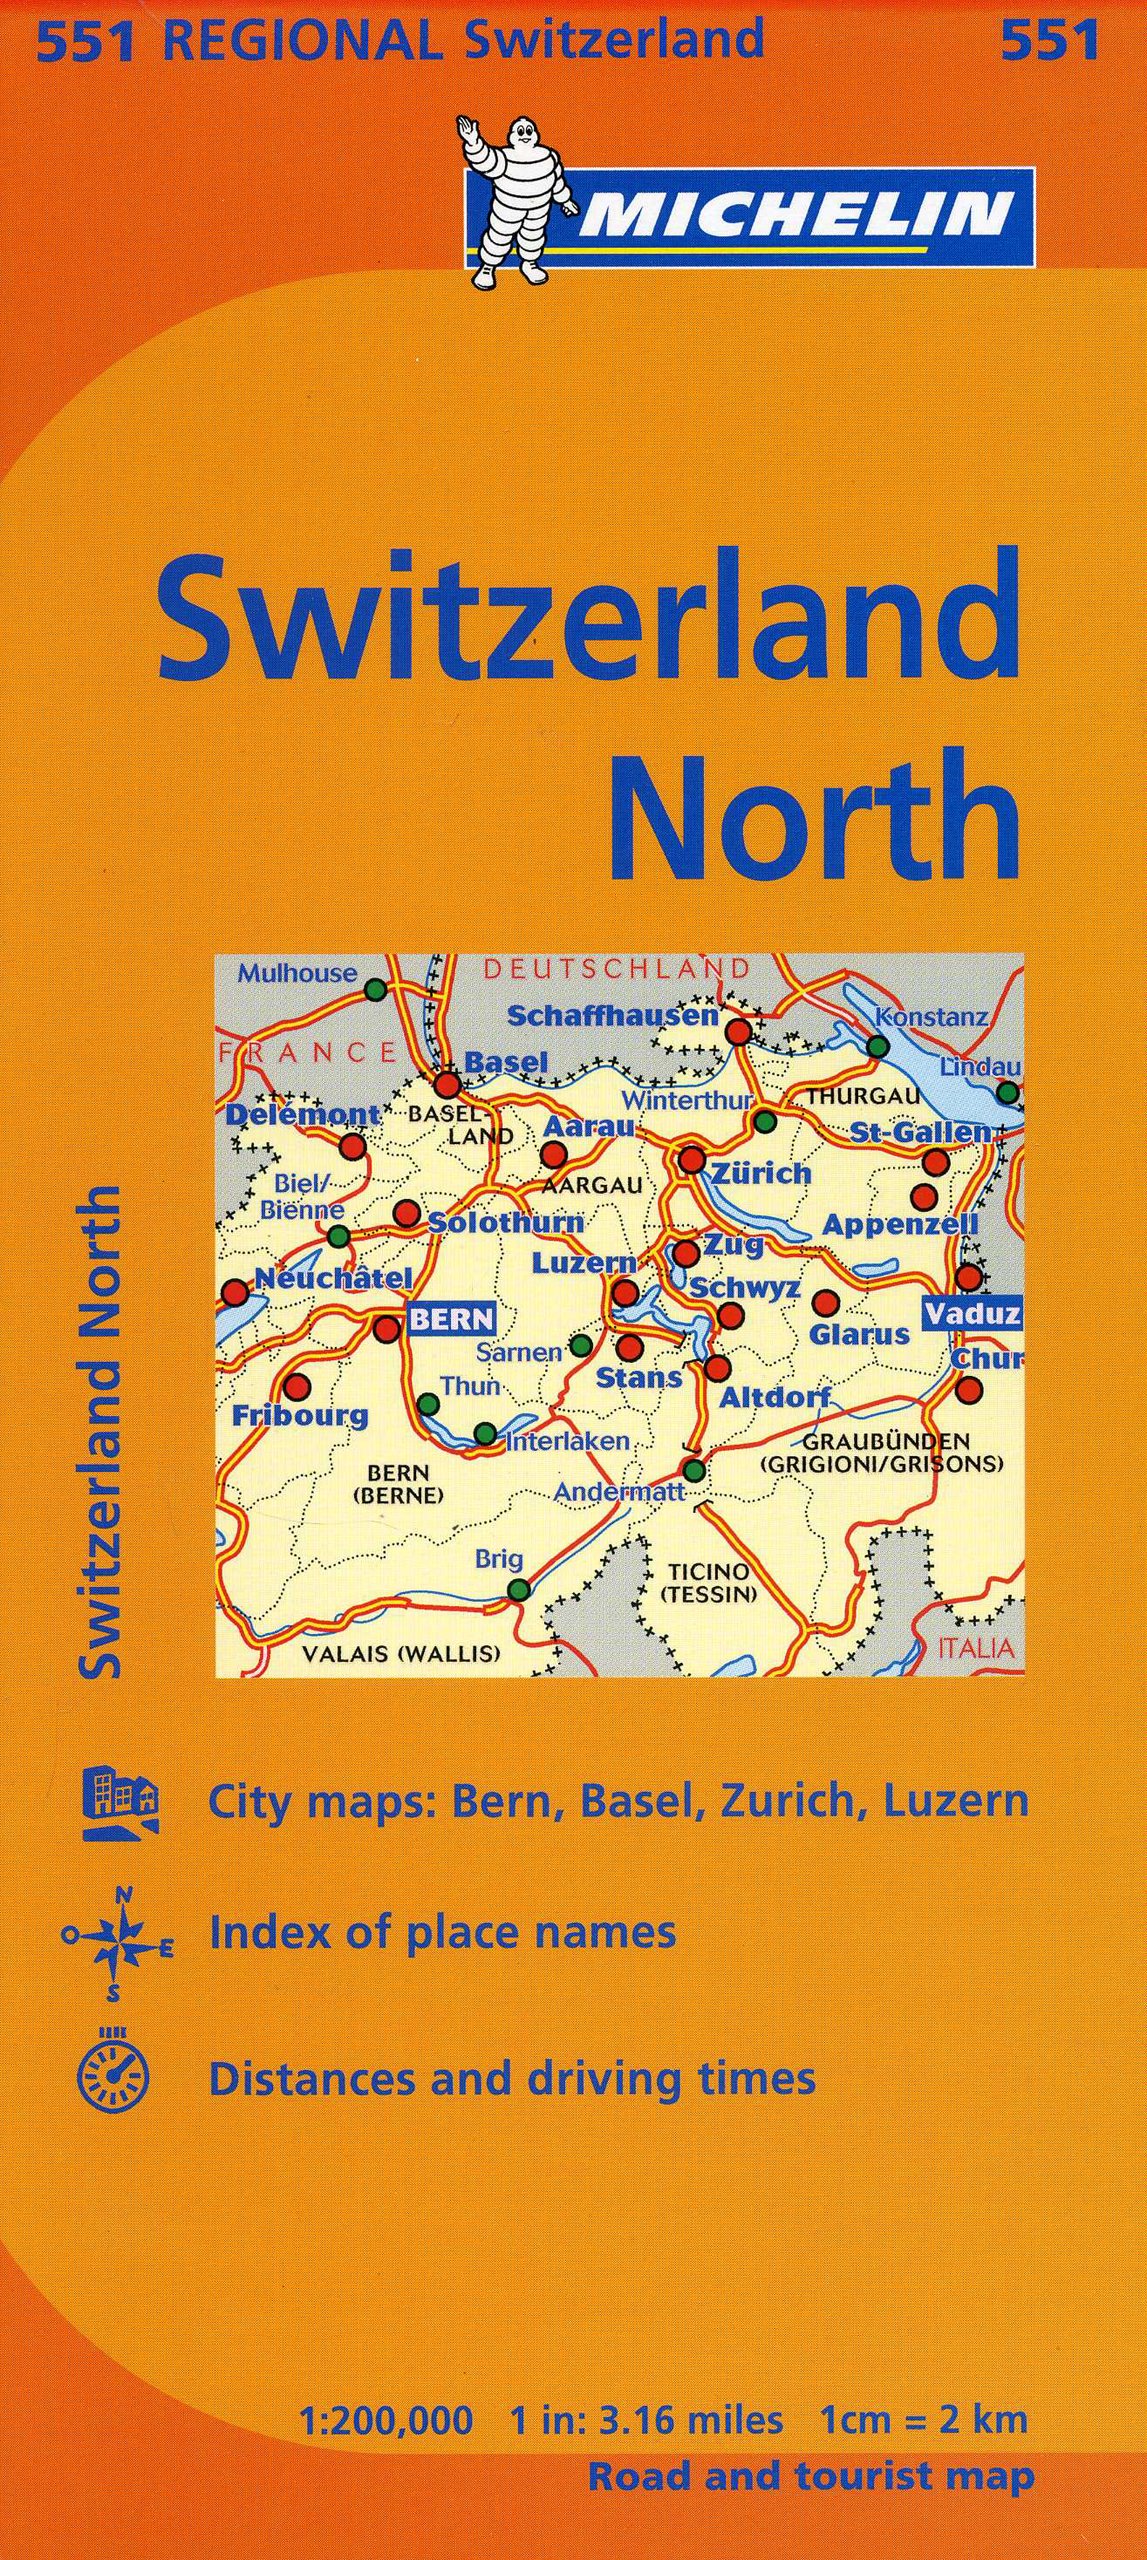 Switzerland North Map MH551 2012 - Michelin